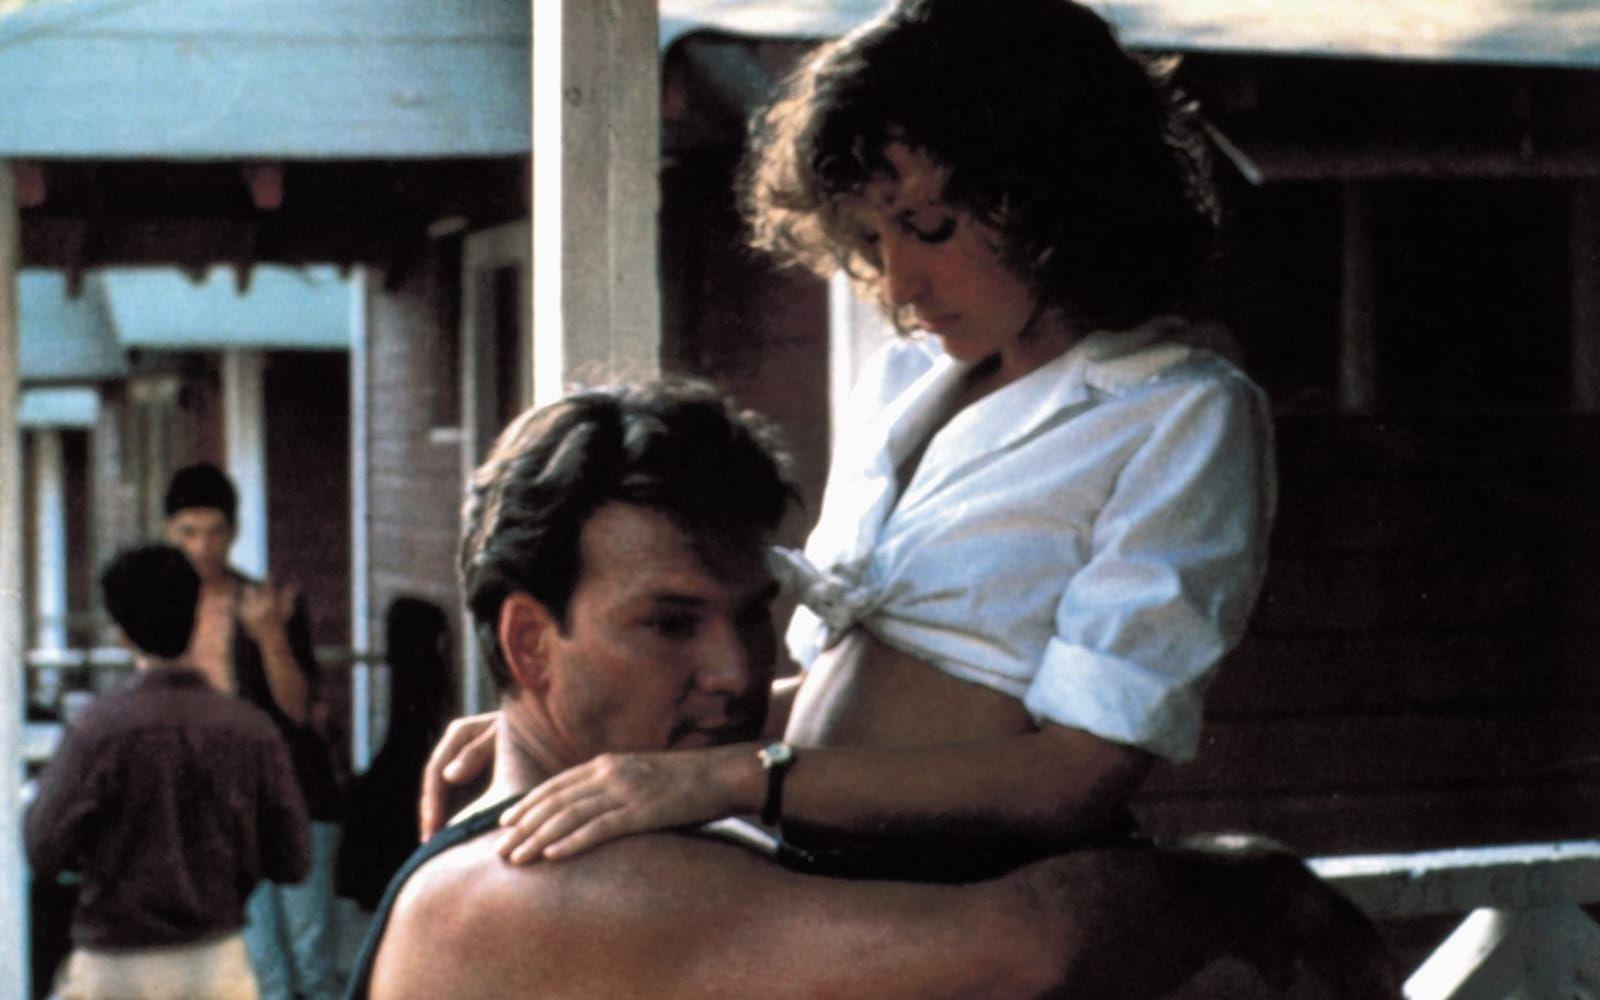 ”Nobody puts Baby in a corner.” - Johnny (Patrick Swayze) till Baby (Jennifer Grey) i ”Dirty dancing” från 1987. Kort och kärnfullt i form av ett klassiskt citat från den 30-årsjubilerande filmen. Foto: Stella Pictures